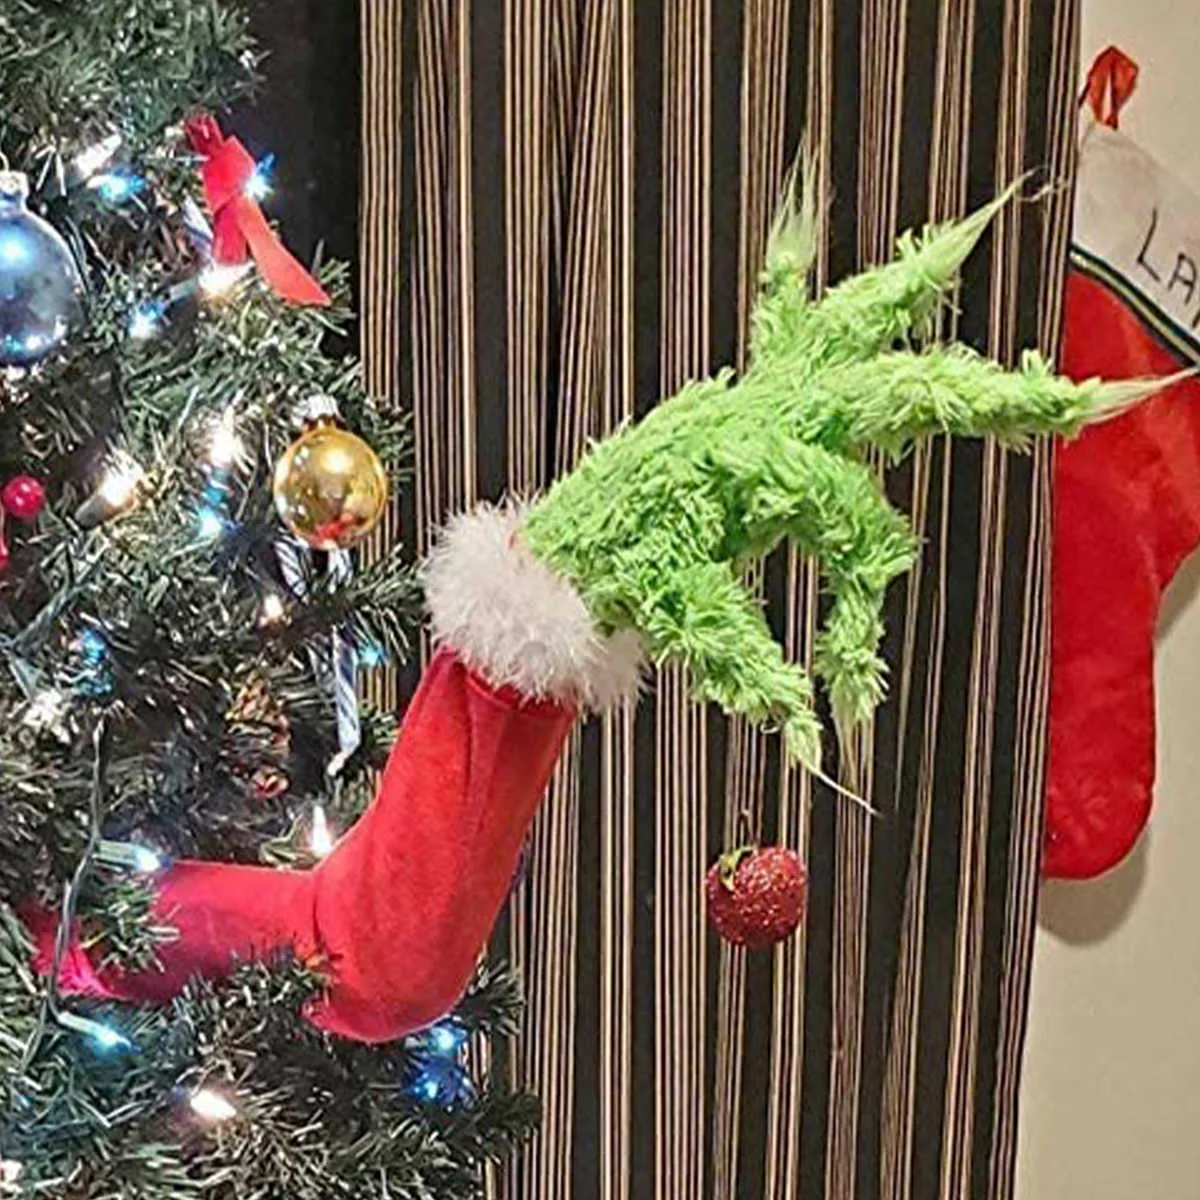 Peluche Le Grinch ILLUMINATION monstre vert écharpe rouge Noël 25 c